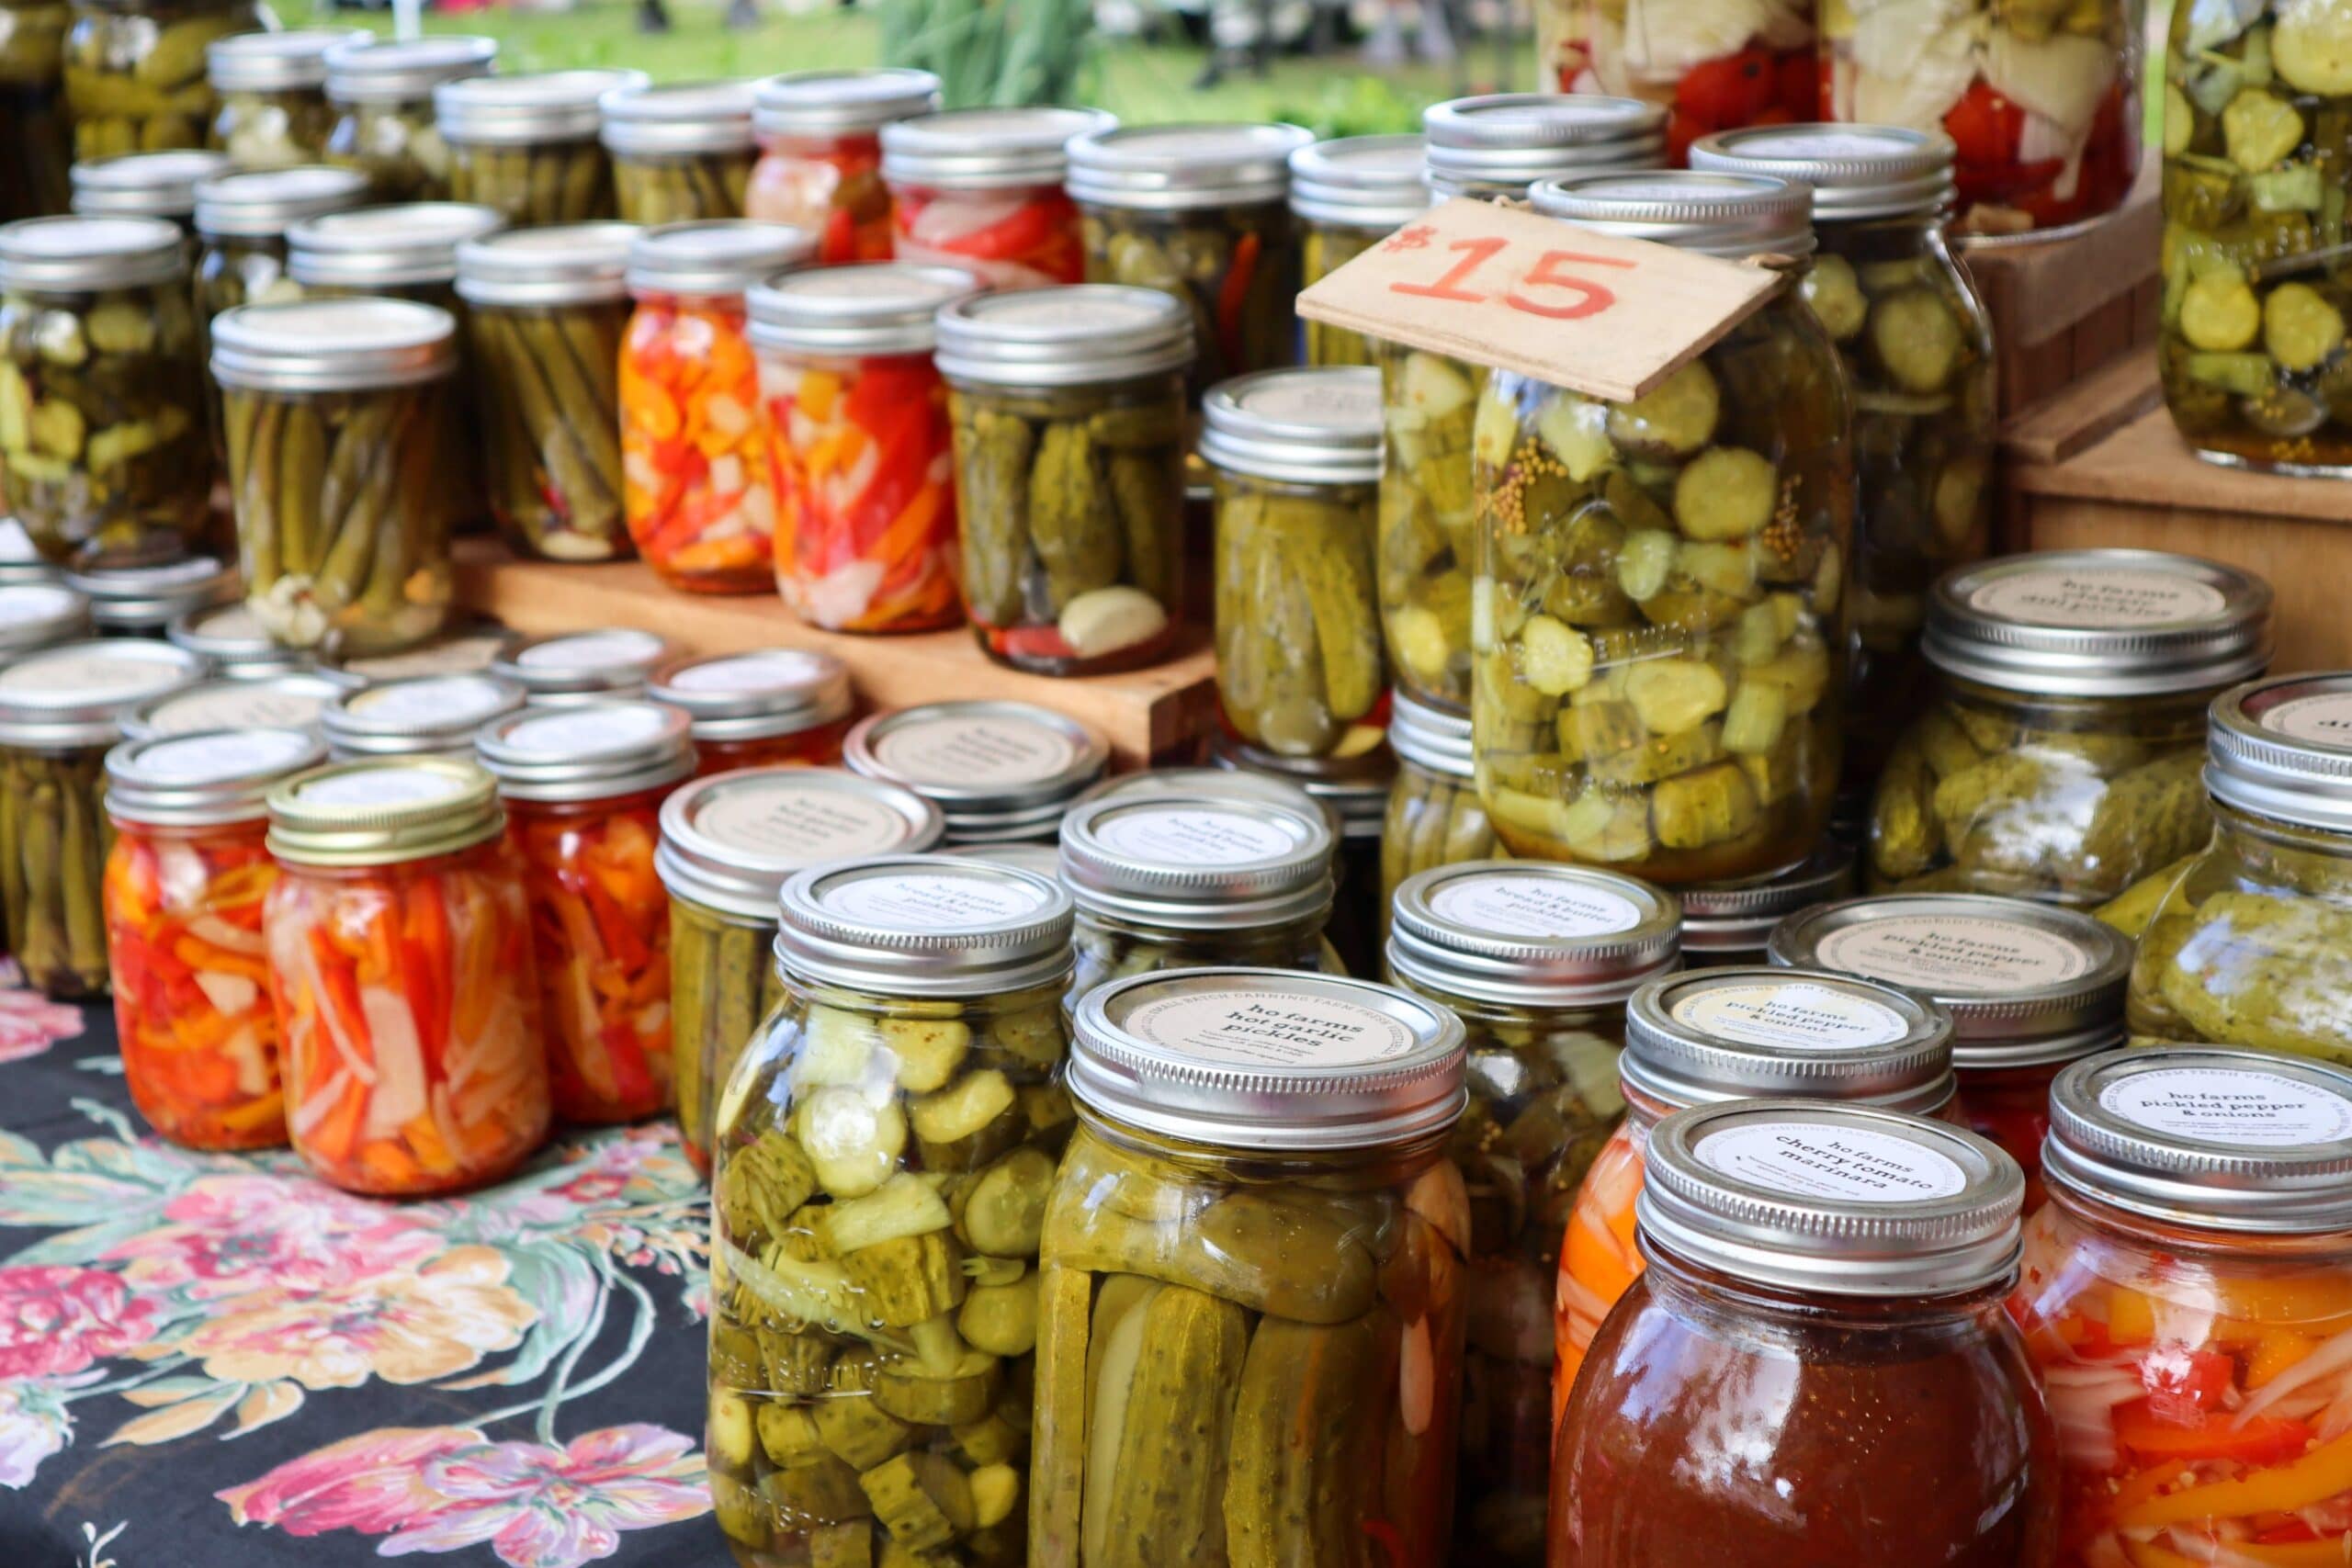 Fermented Foods in Jars